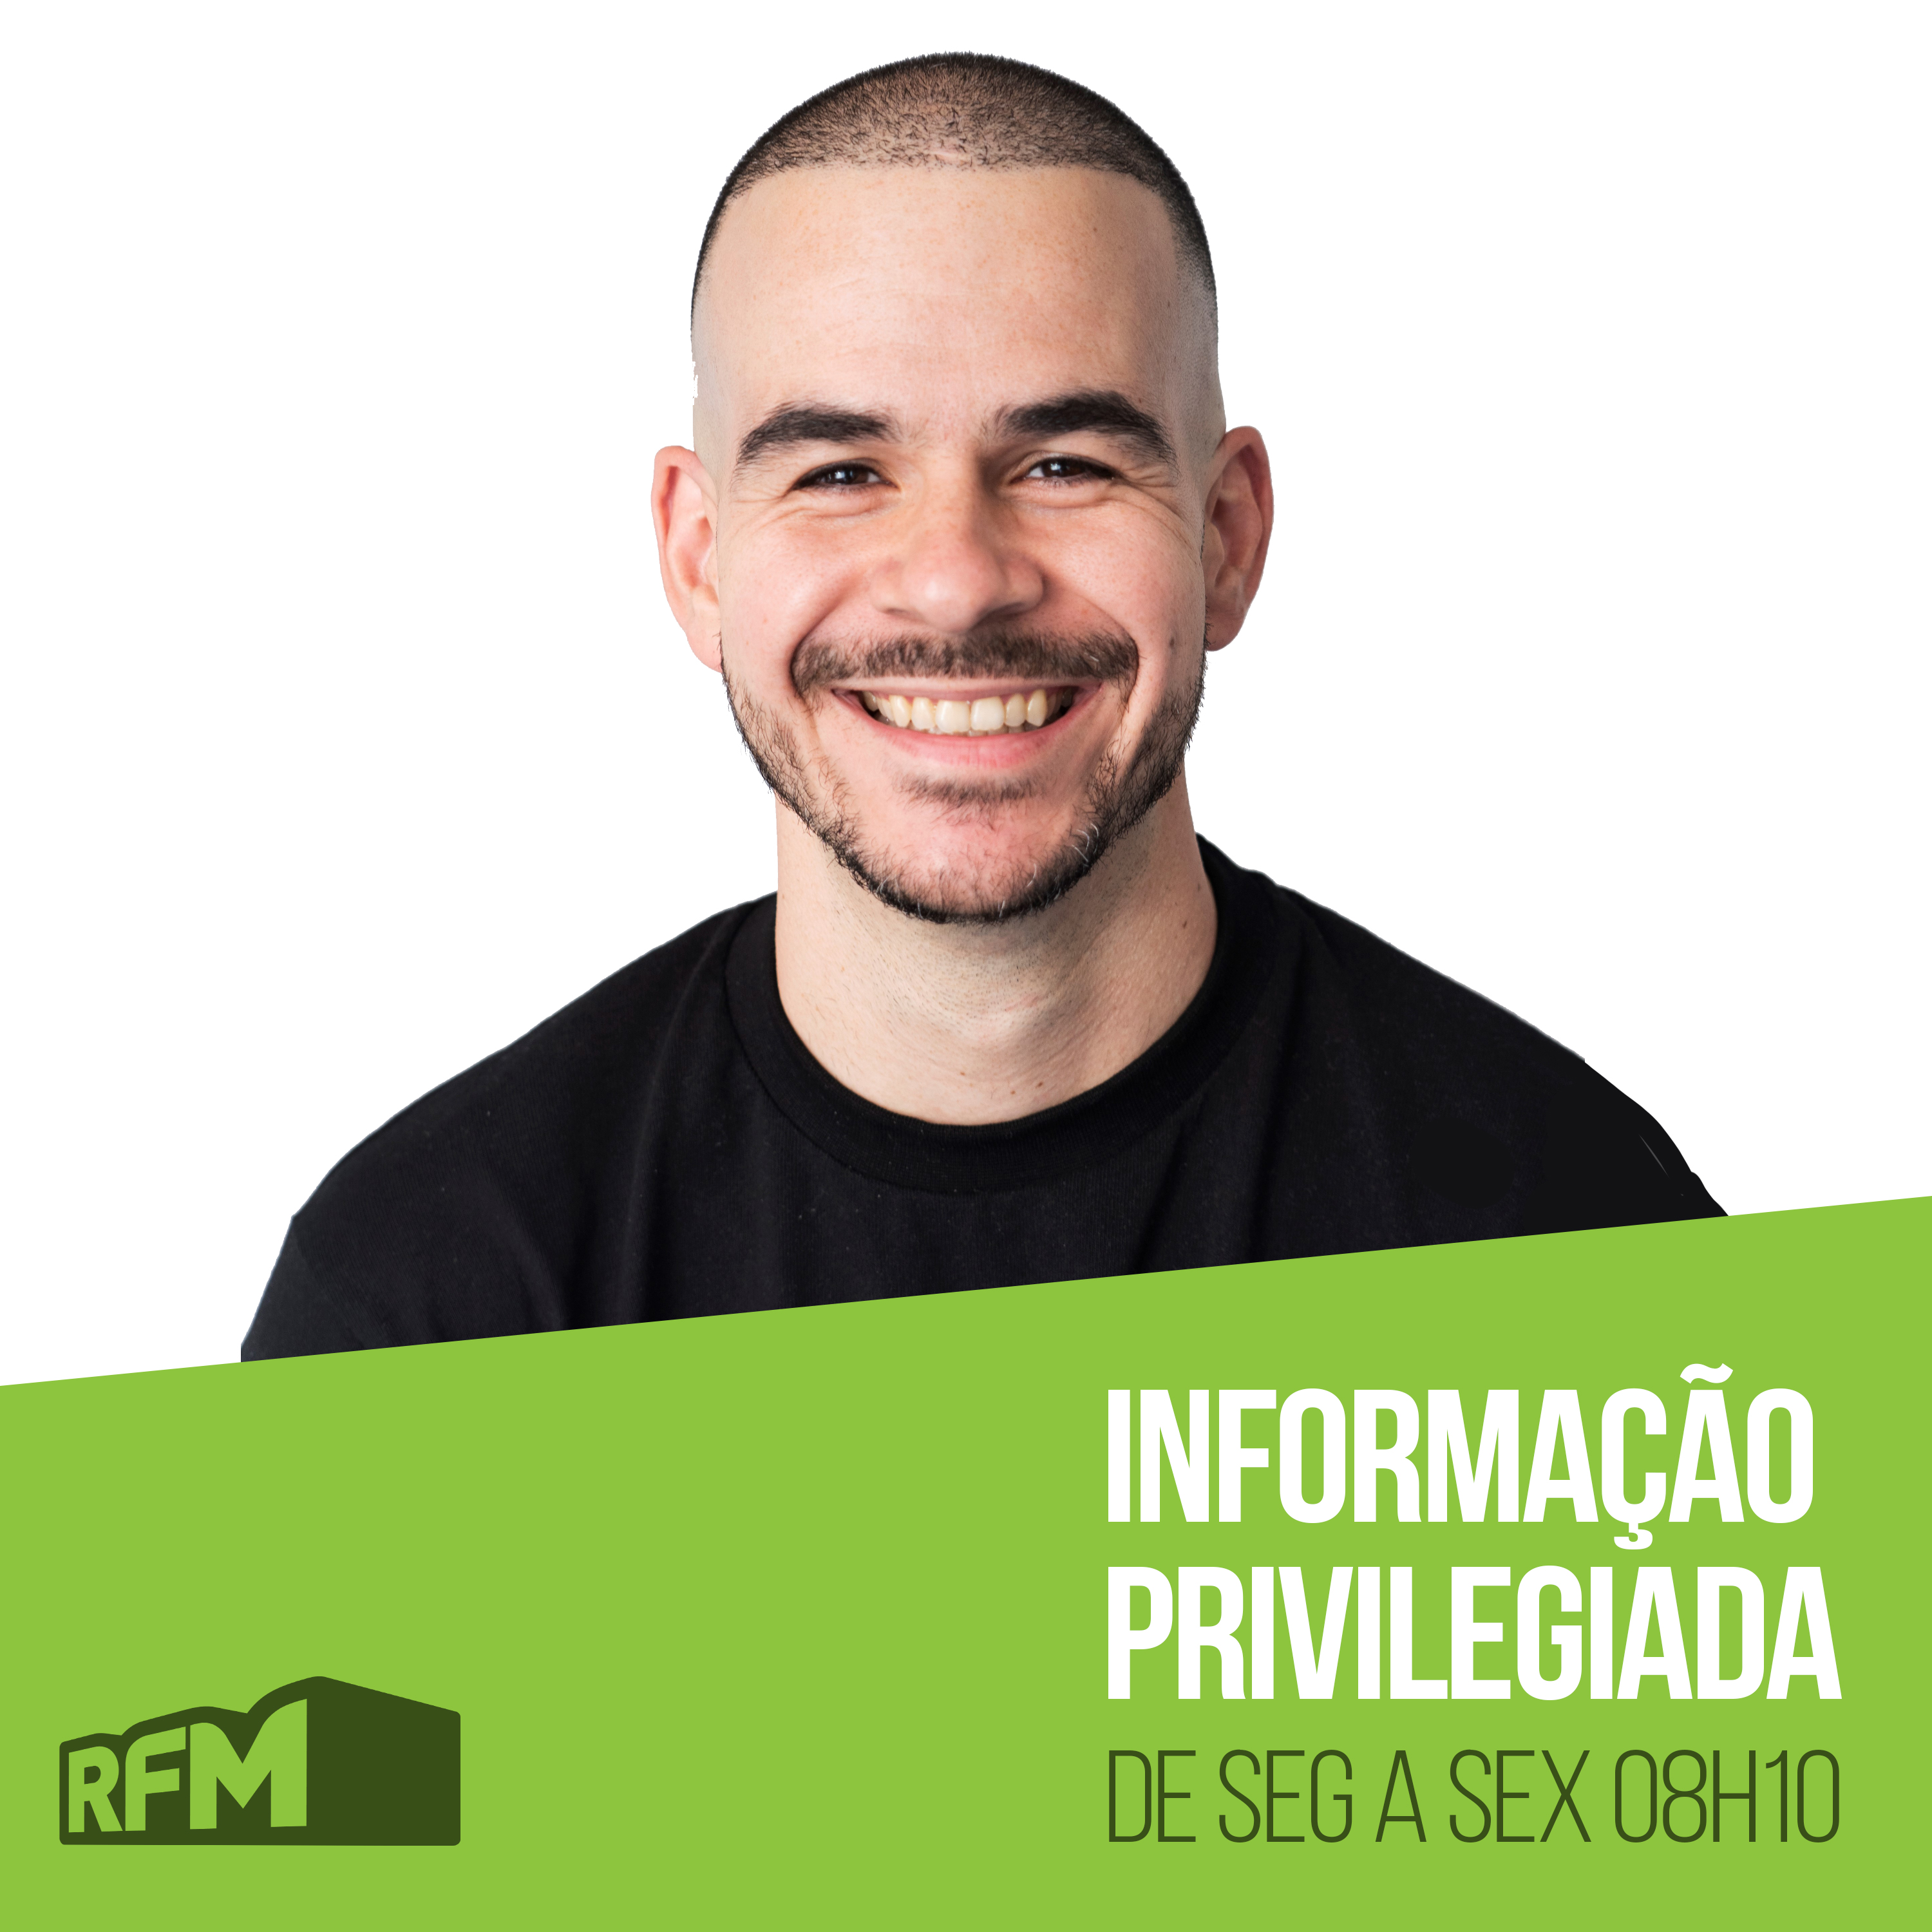 RFM - Informação Privilegiada: O MESTRE DE TROCADILHOS DO PEDRO FERNANDES